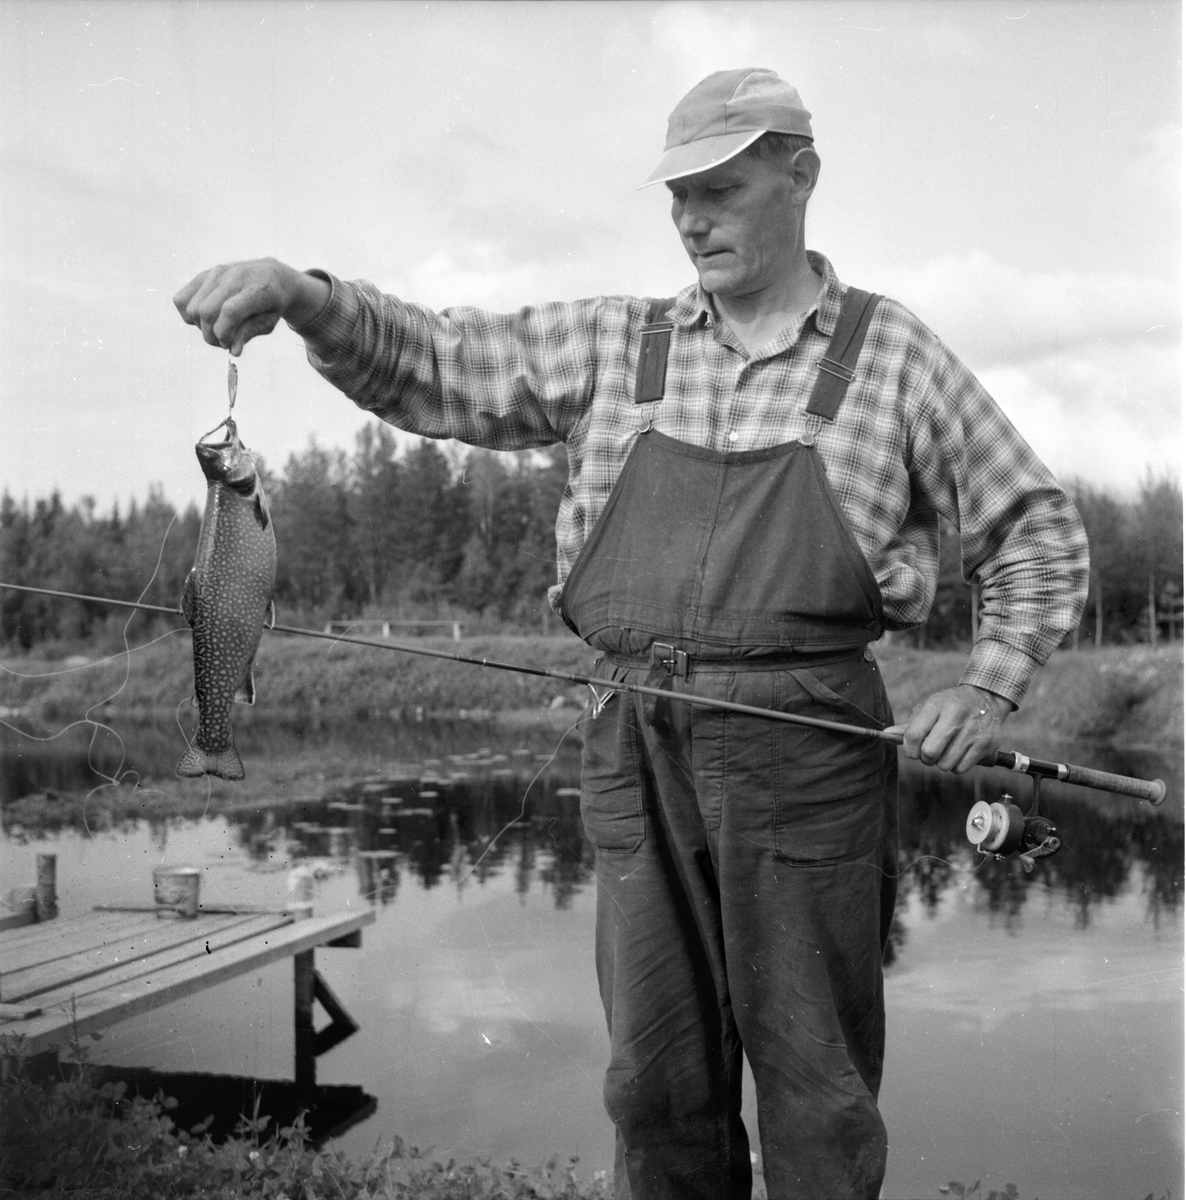 Järvsö-Nor. Öringsodling i Nor
Olof Olsson. 8/8-1960